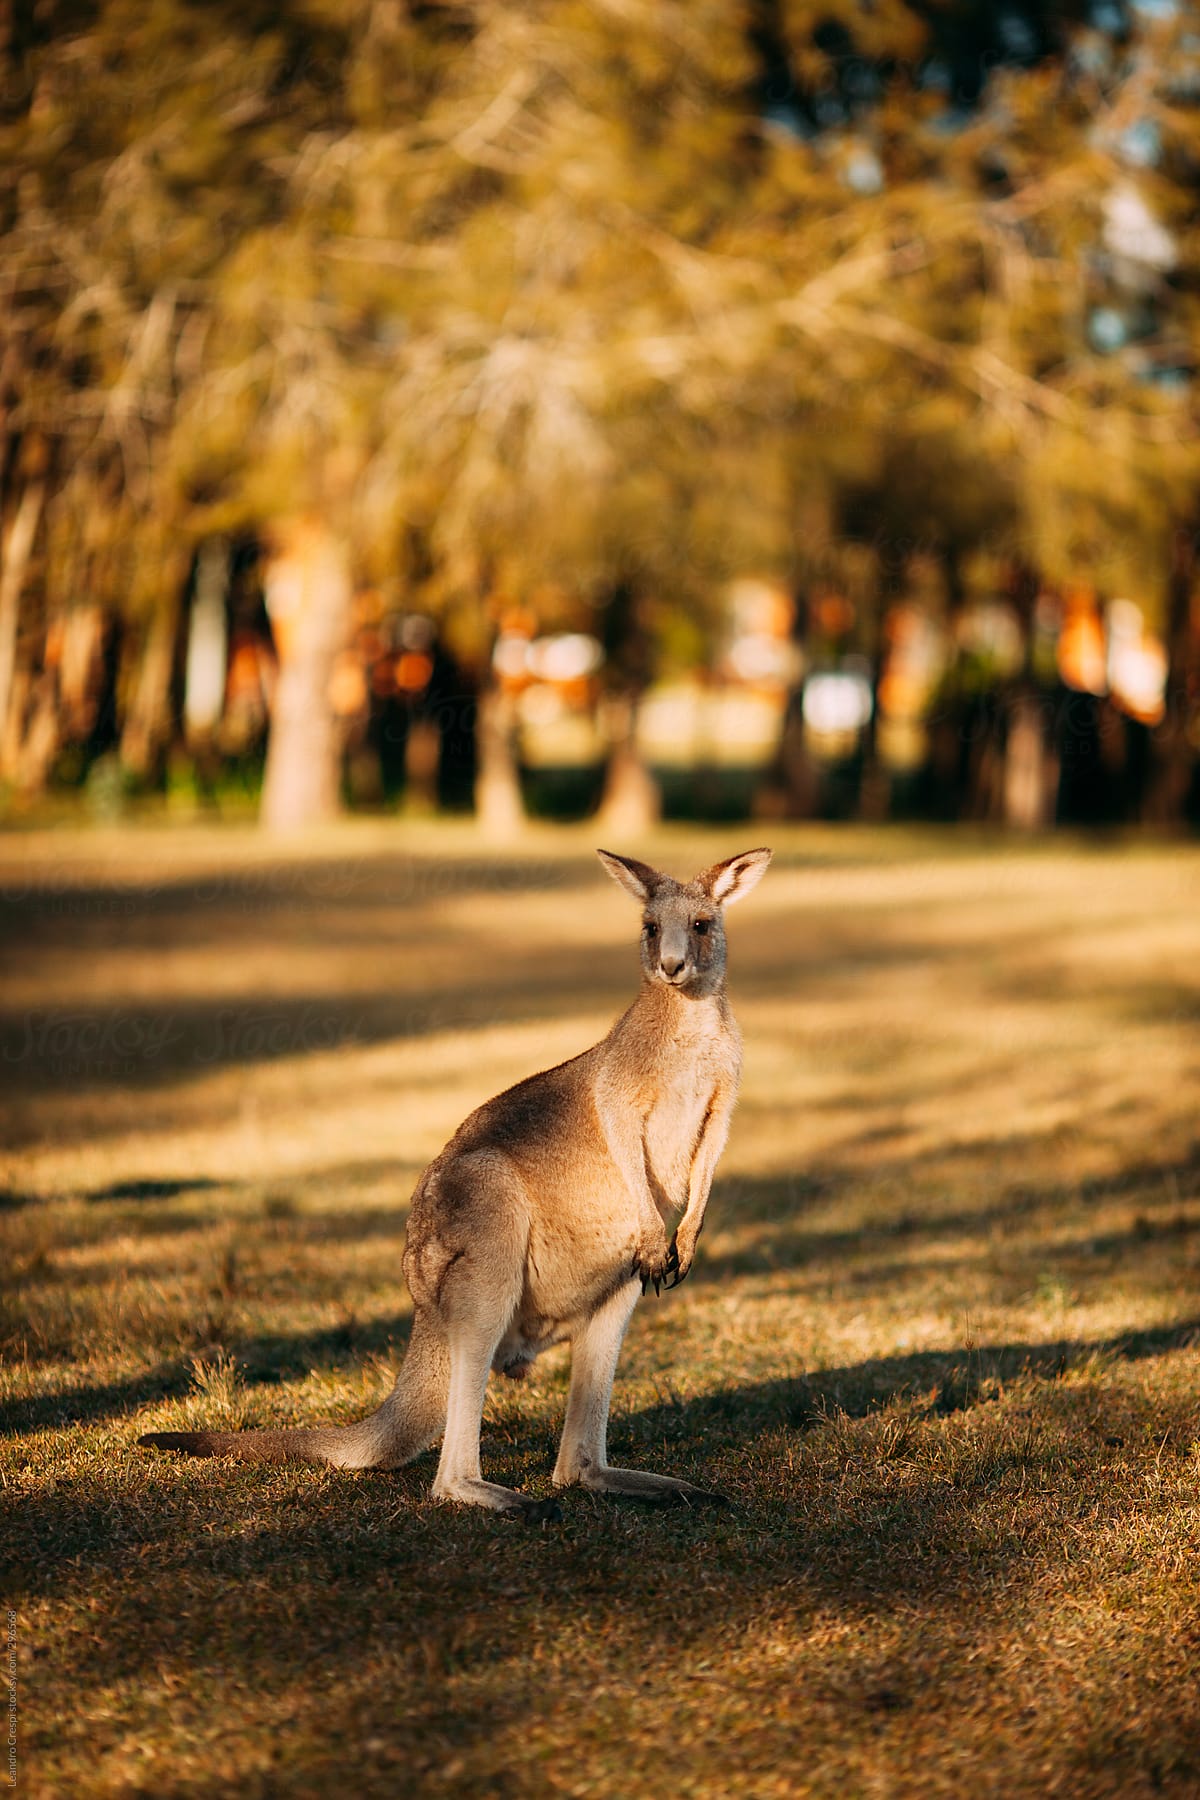 Wild Australian Kangaroo in the forest